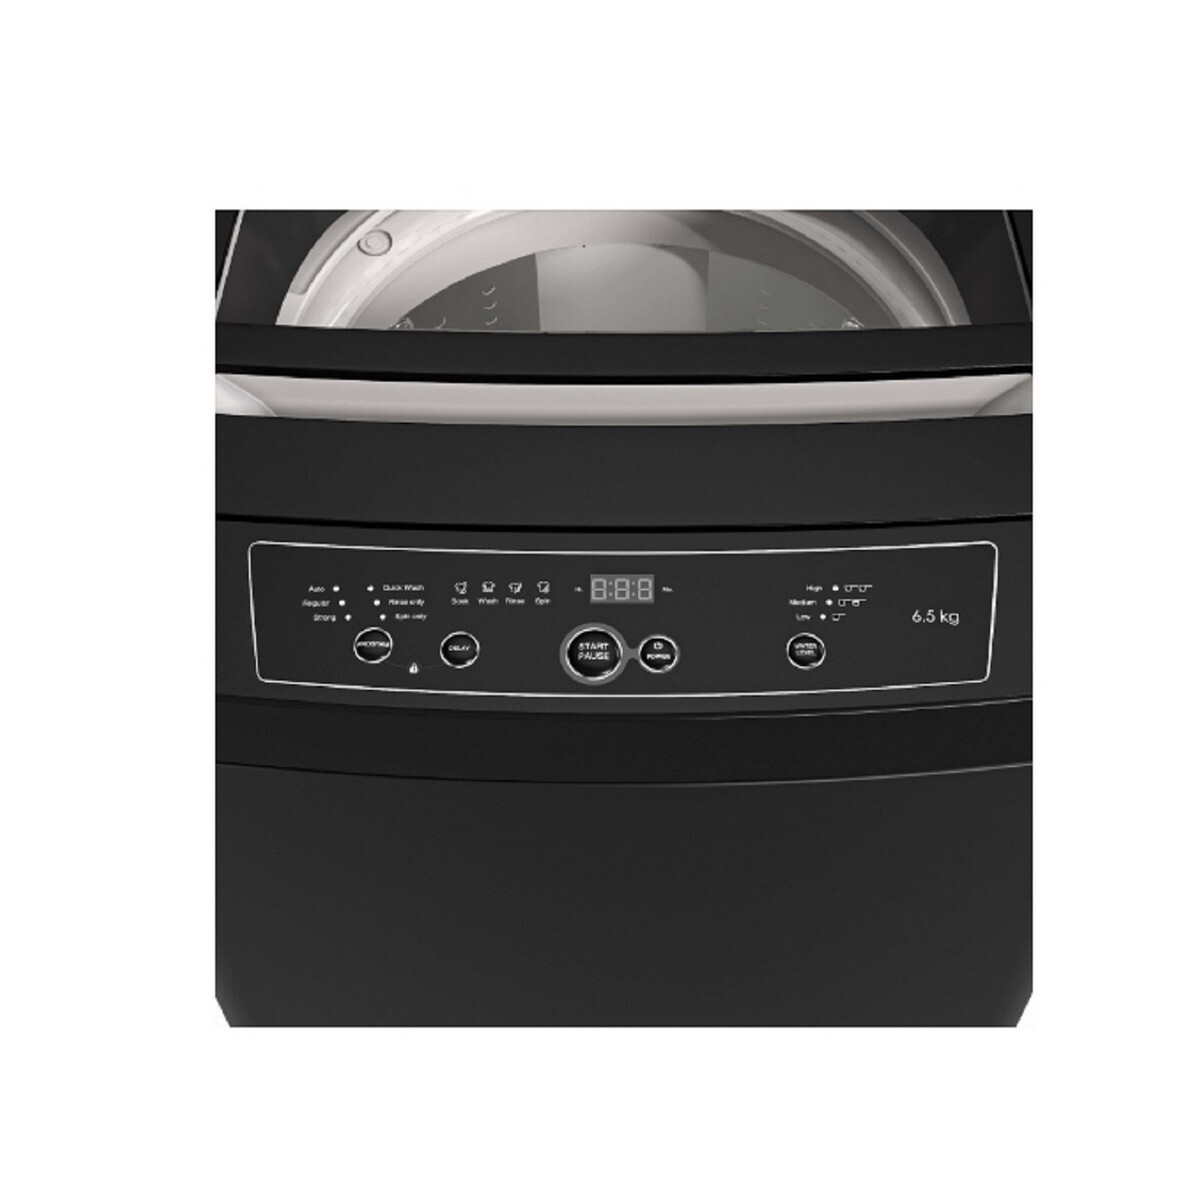 Godrej Fully Automatic Top L oad Washing Machine WTEON ADR 65 5.0 PFDTN Graphite Grey 6.5Kg